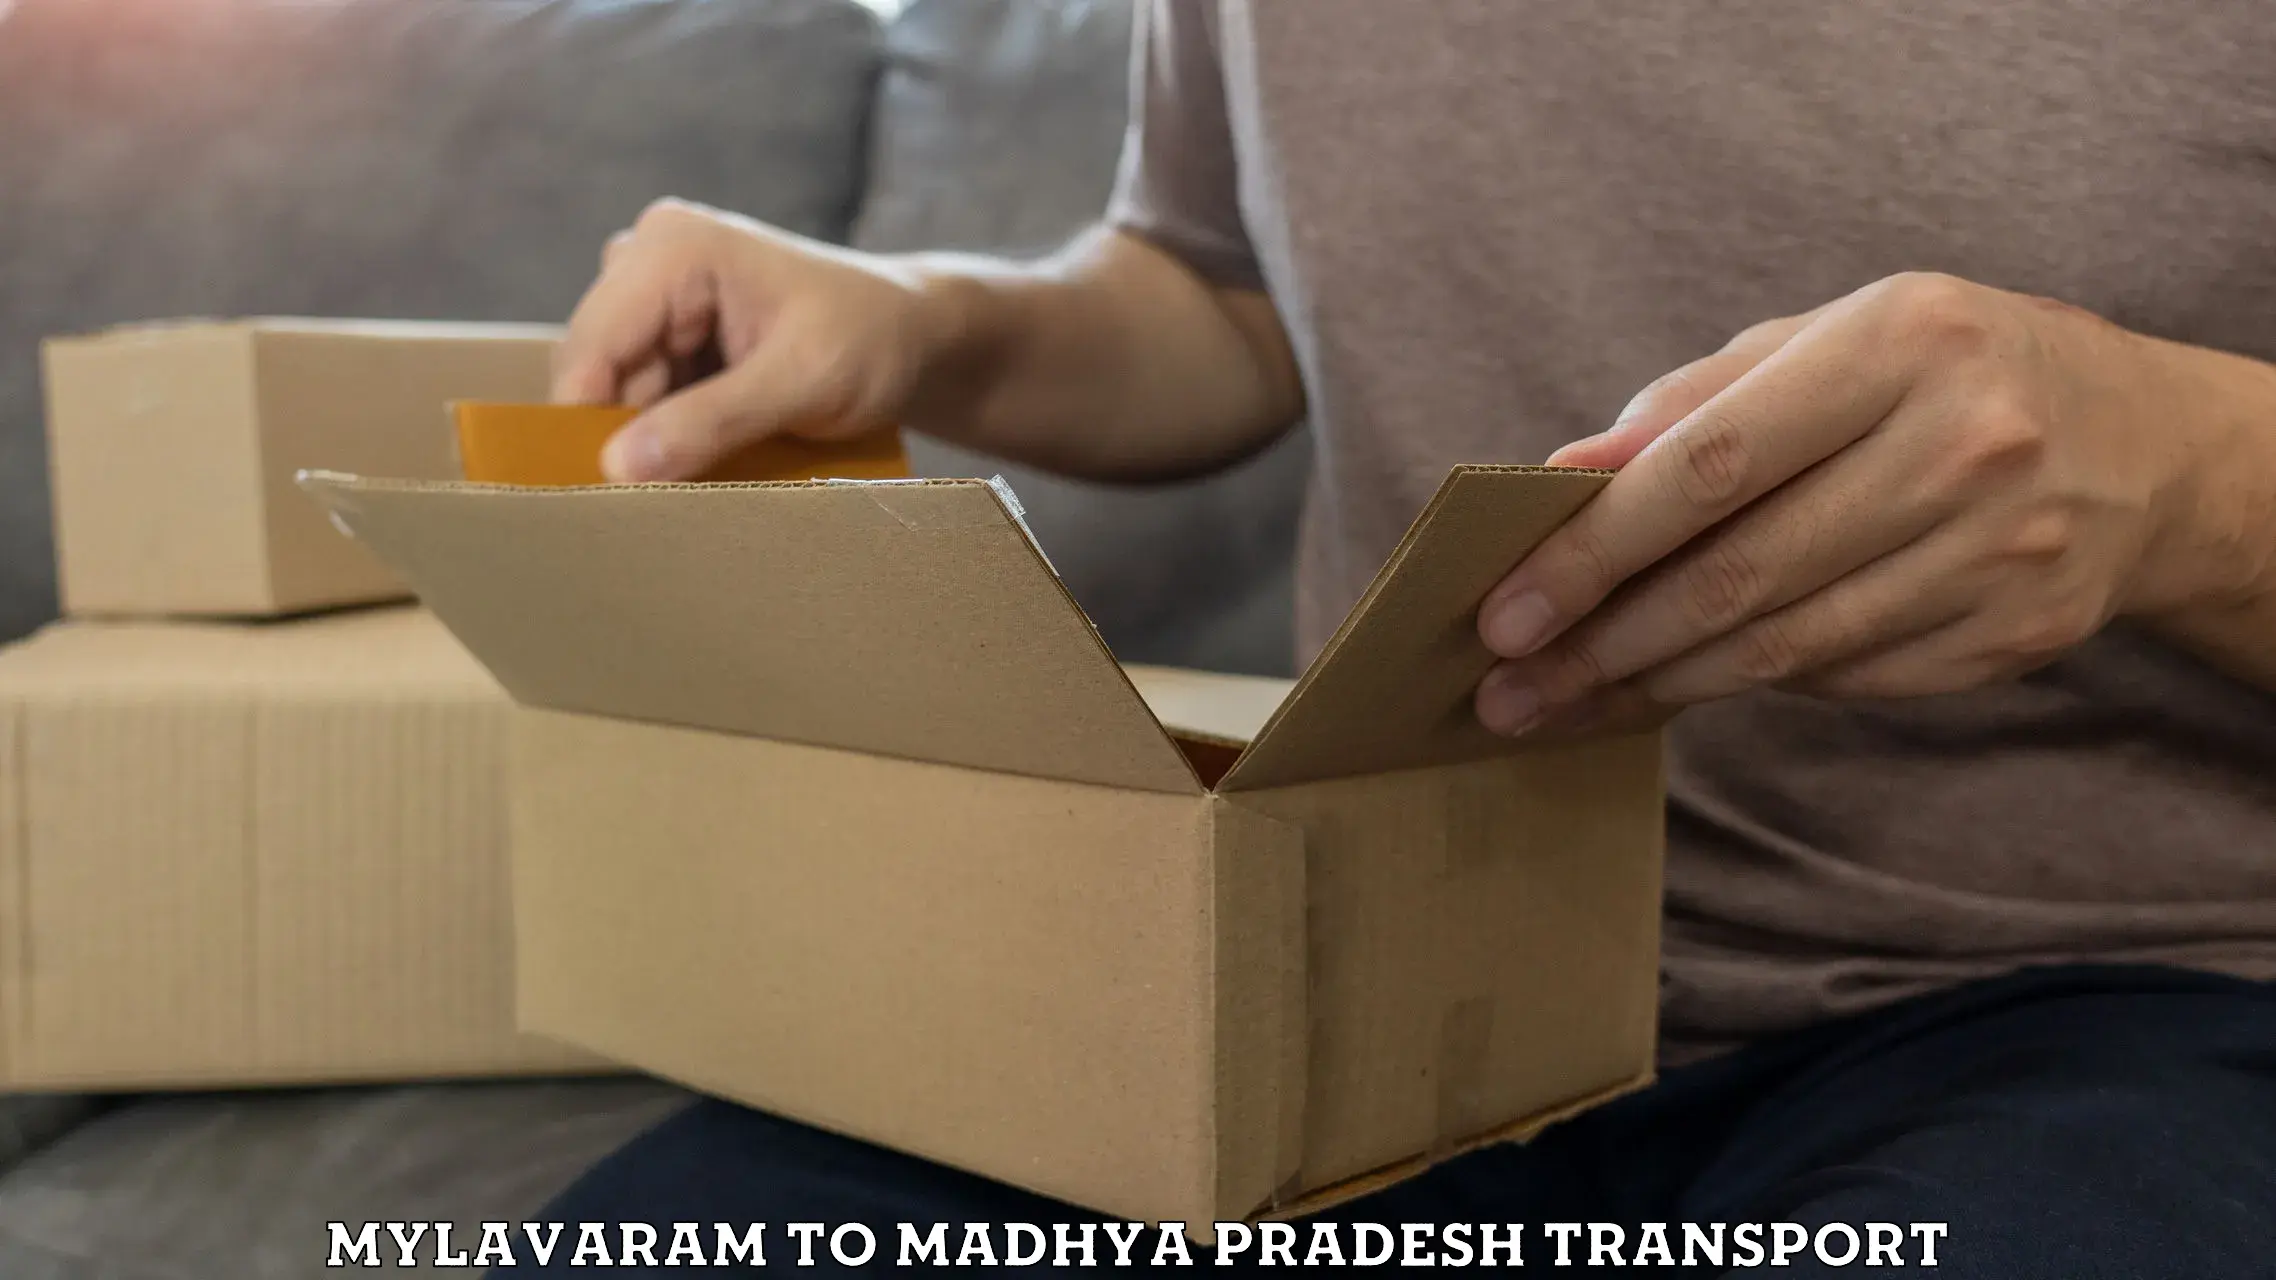 Sending bike to another city Mylavaram to Madhya Pradesh